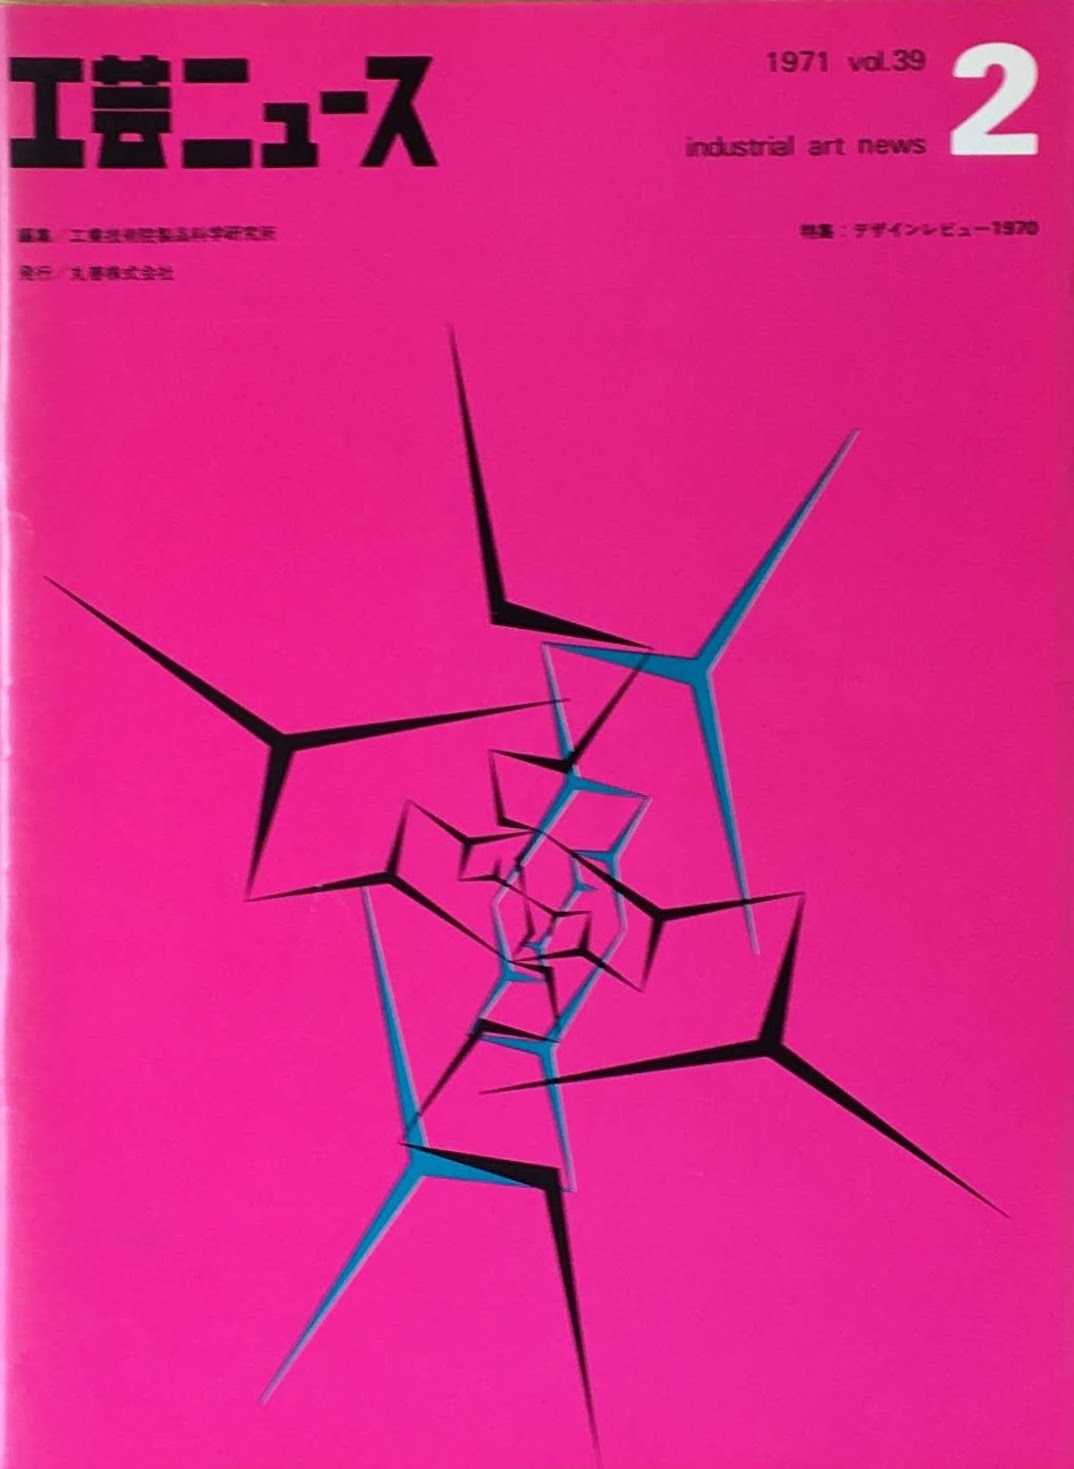 工芸ニュース　industrial art news 1971 vol.39 no.2